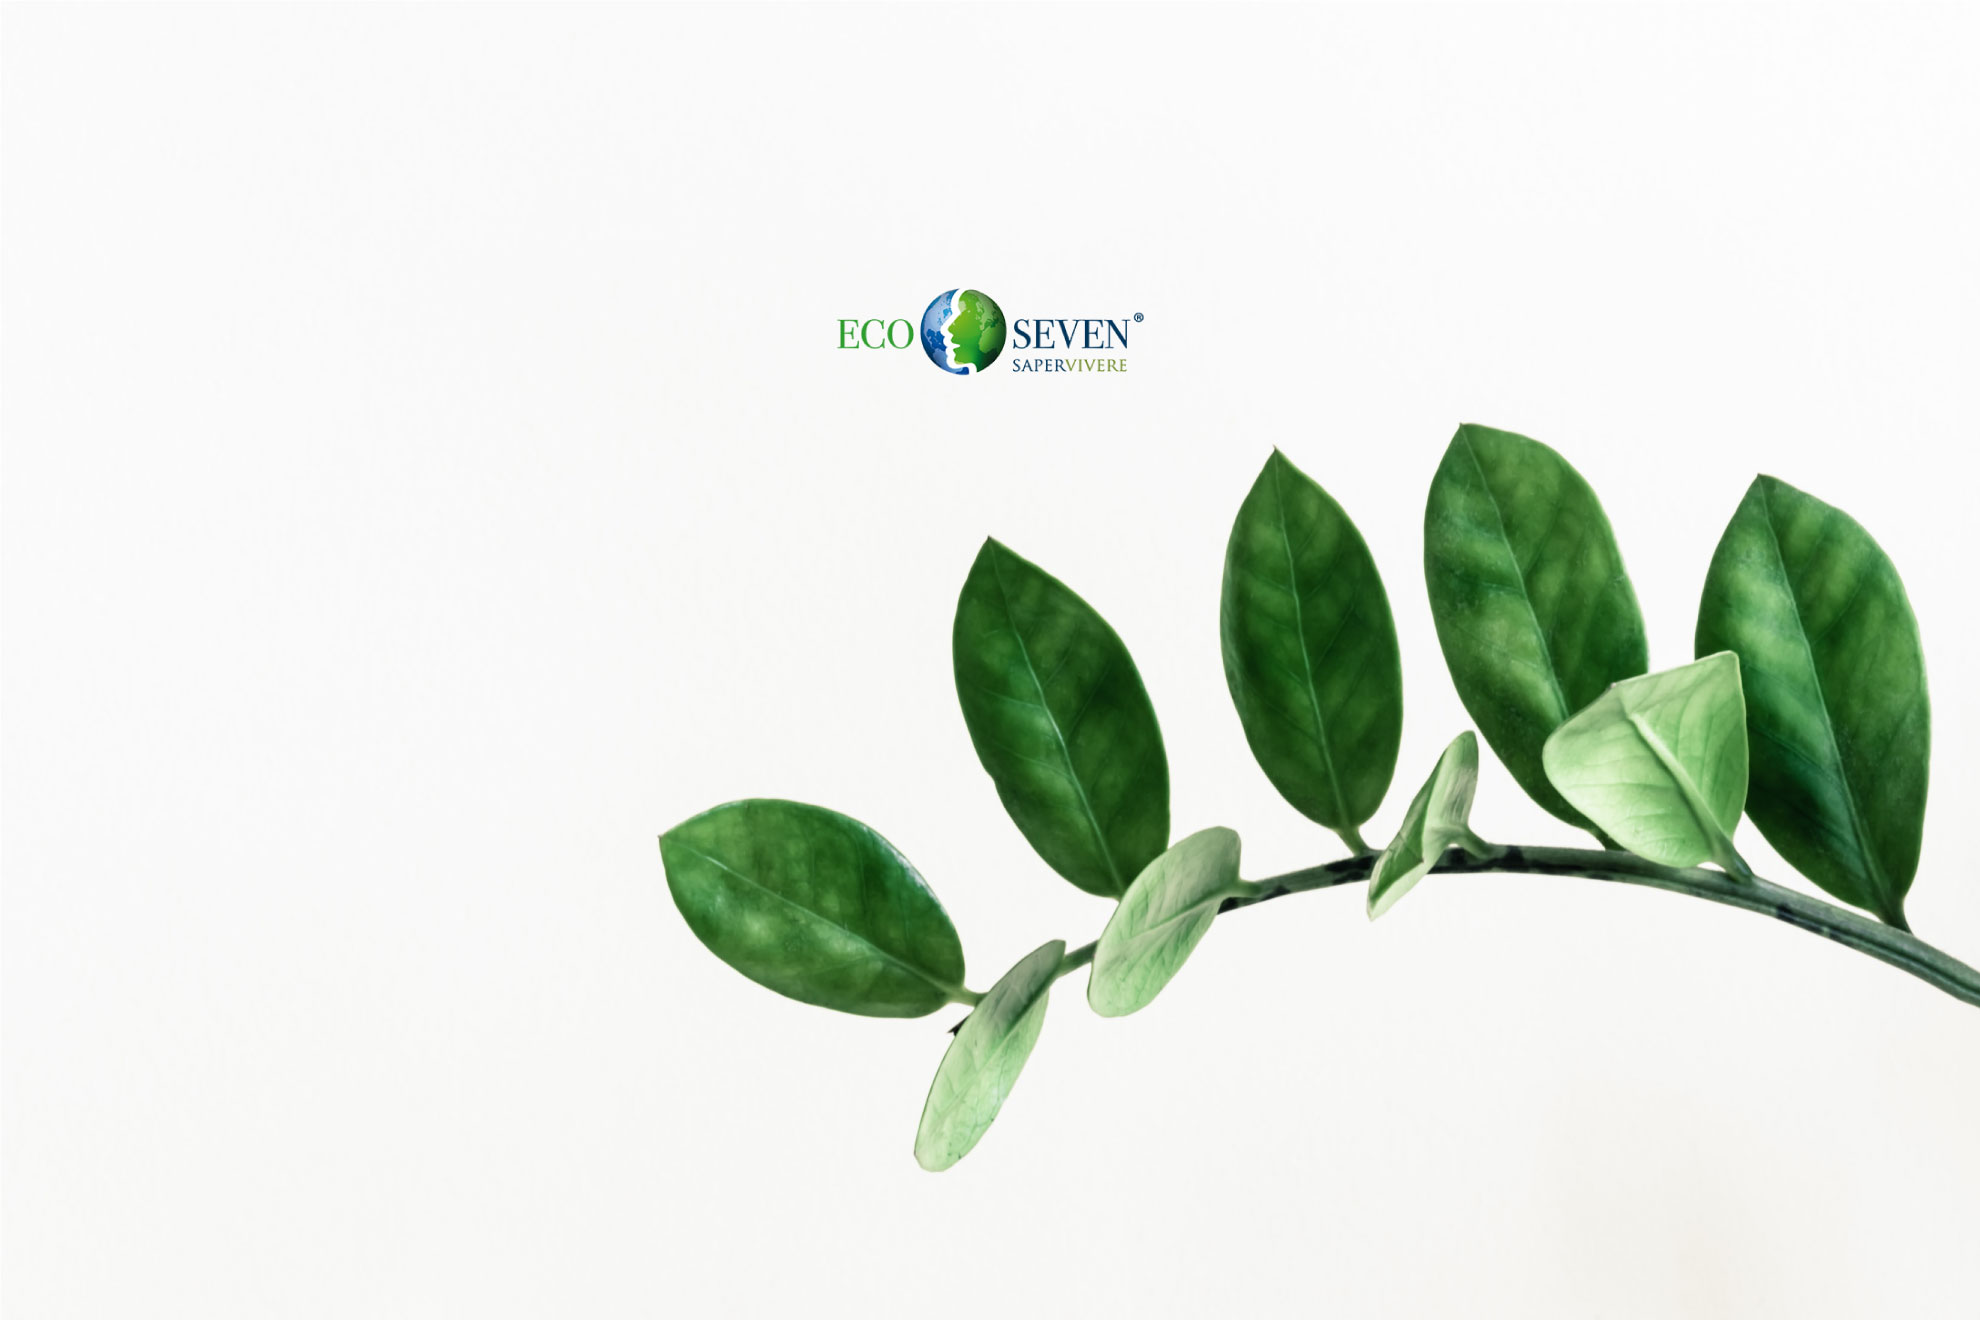 Immagine foglie con logo Ecoseven